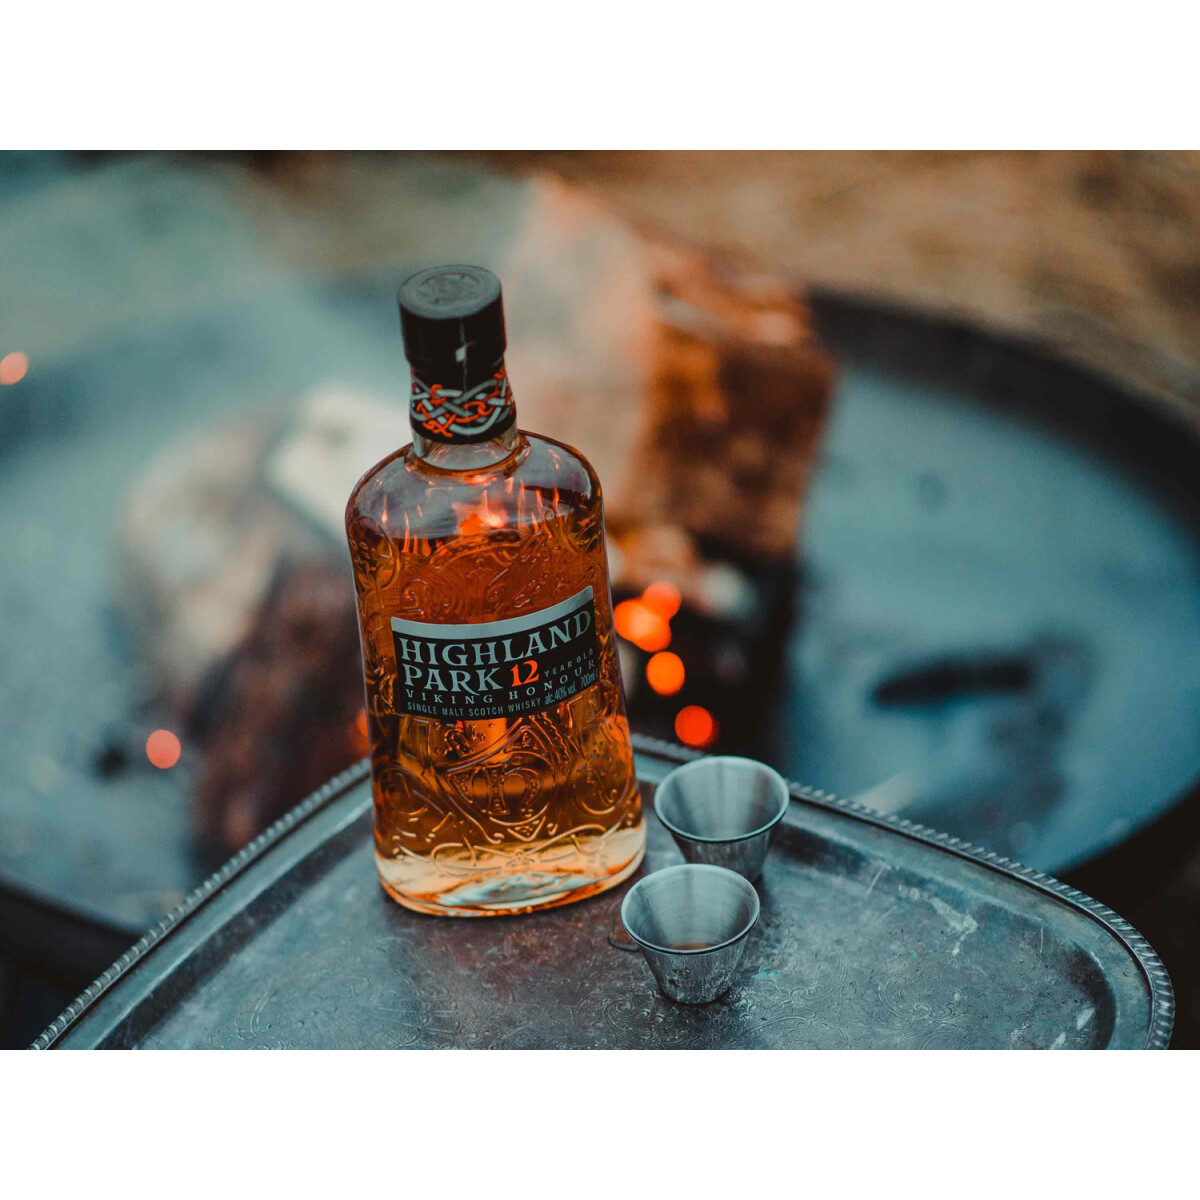 Highland Park 12 Years VIKING HONOUR Single Malt Scotch Whisky mit  Geschenkbox 40% Vol, 25,99 €